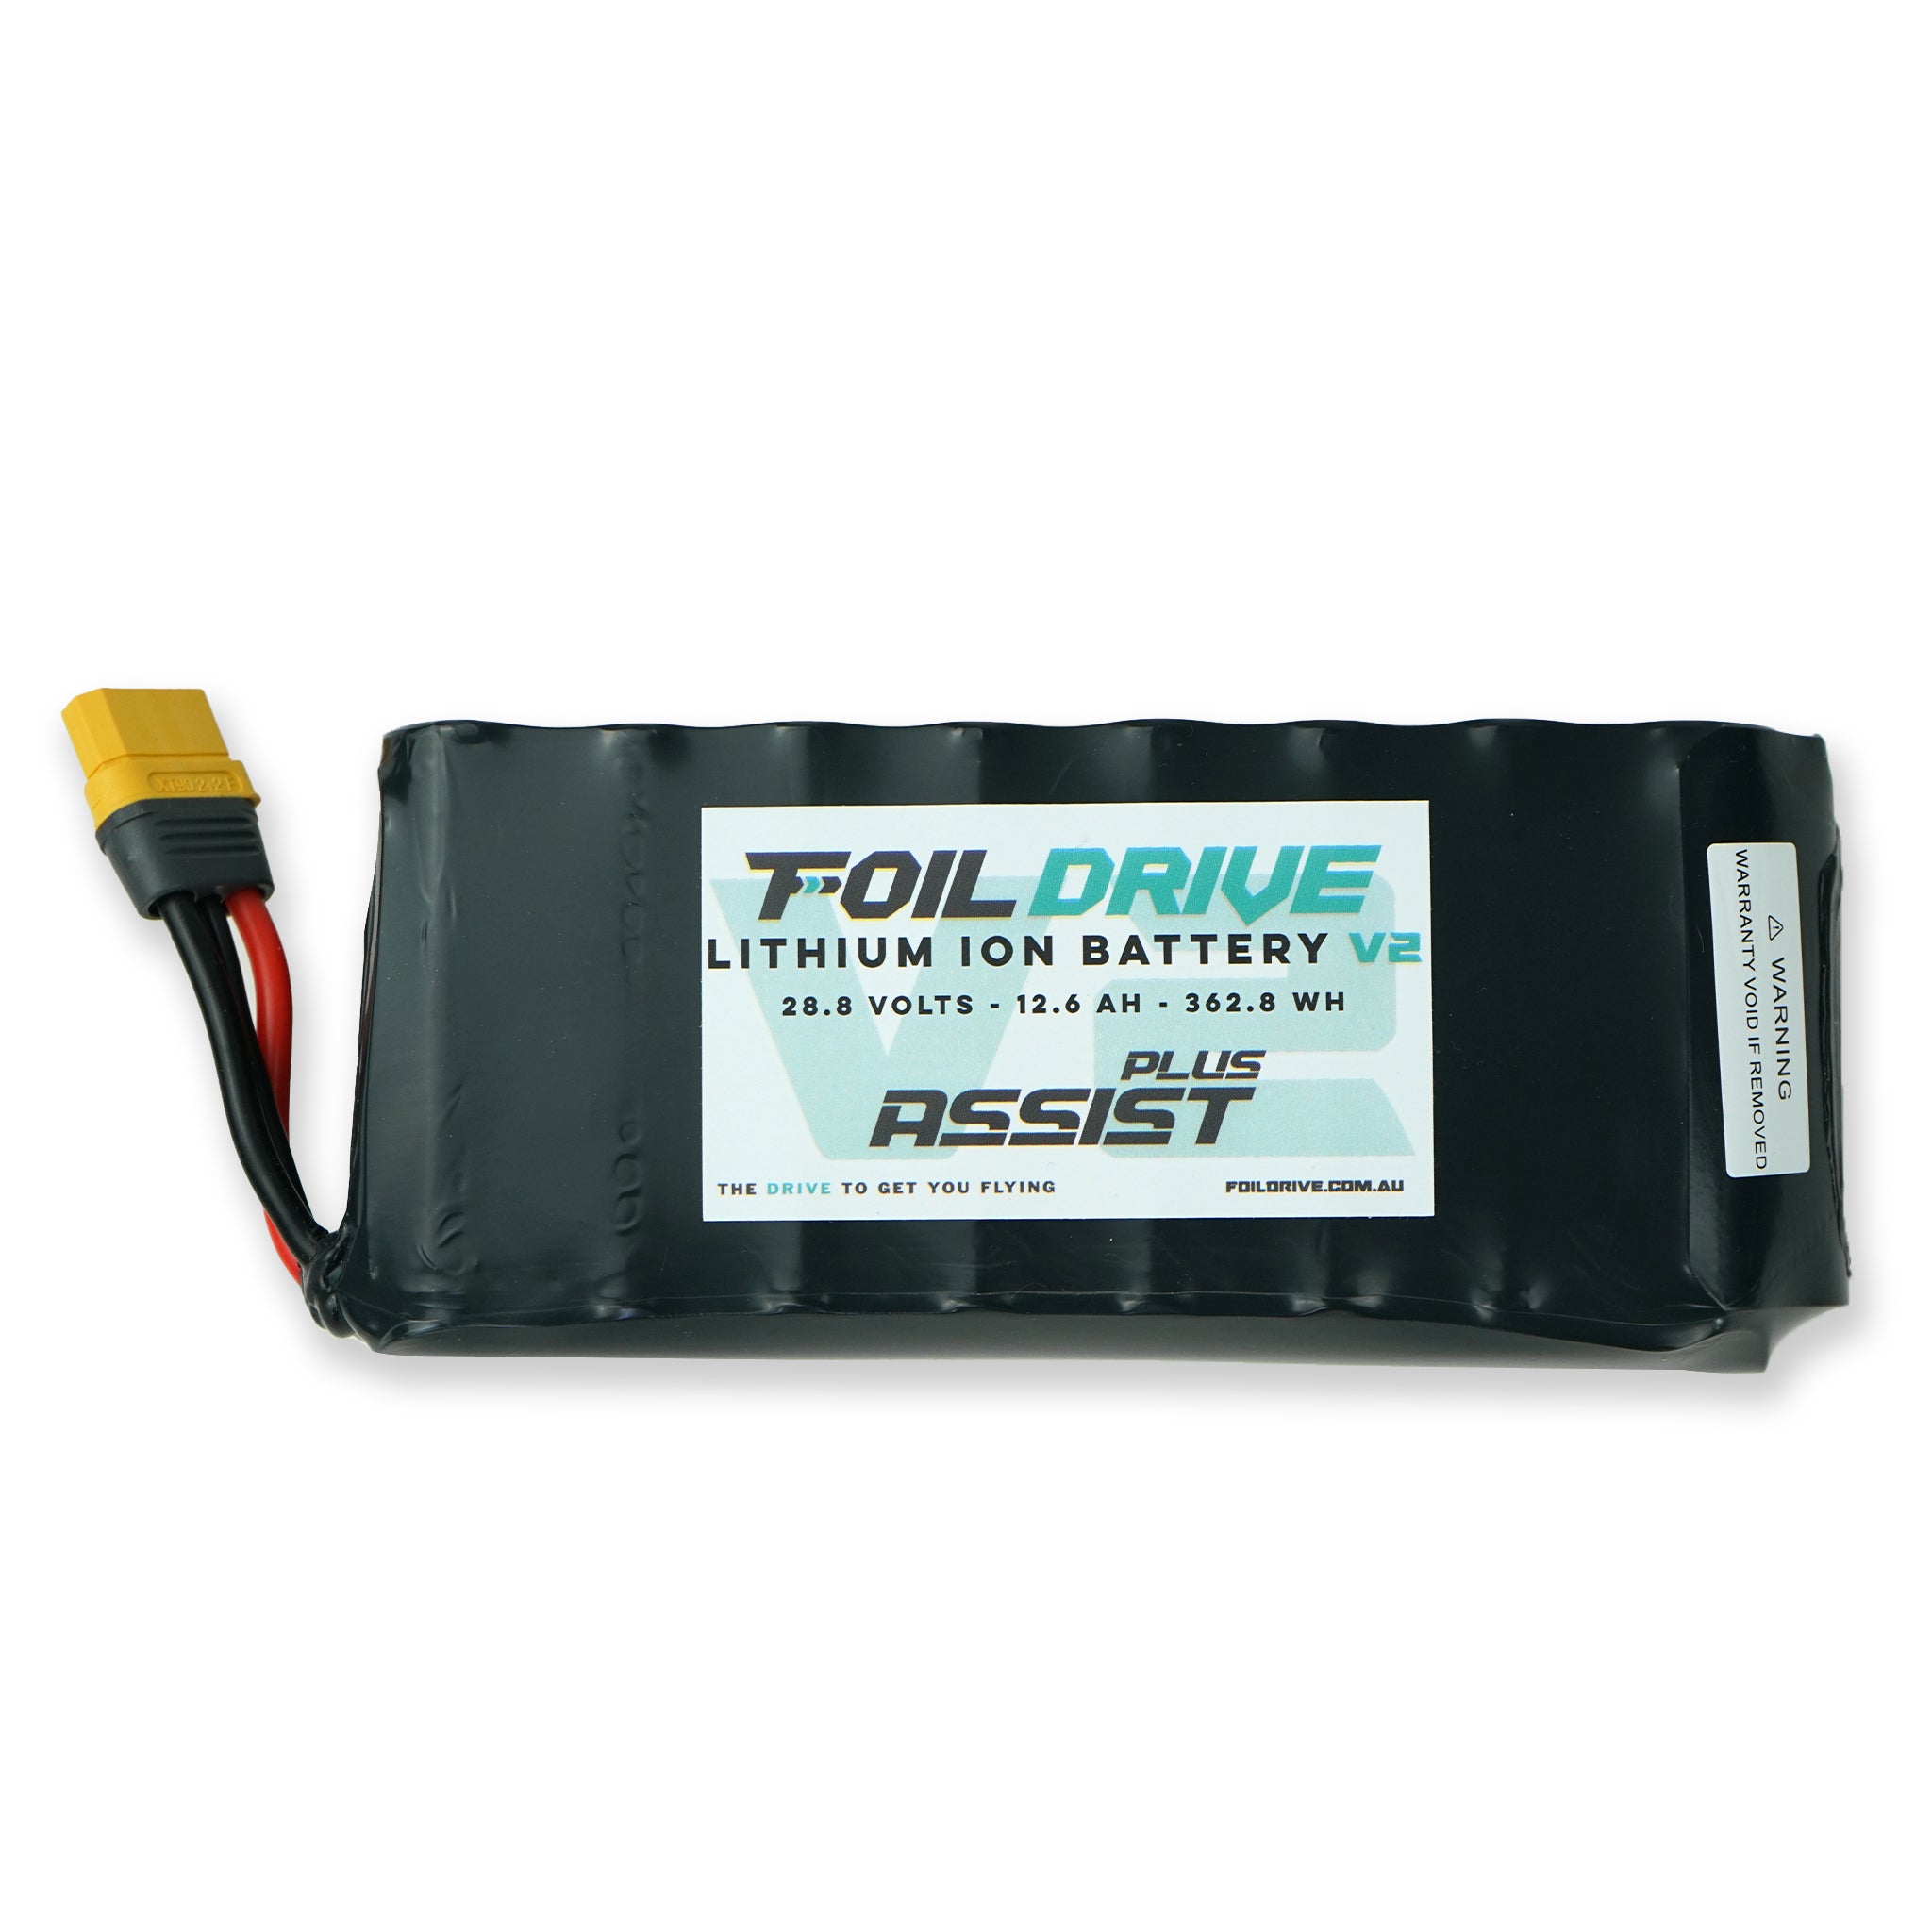 Foil Drive Assist PLUS 12.6ah Standard Battery